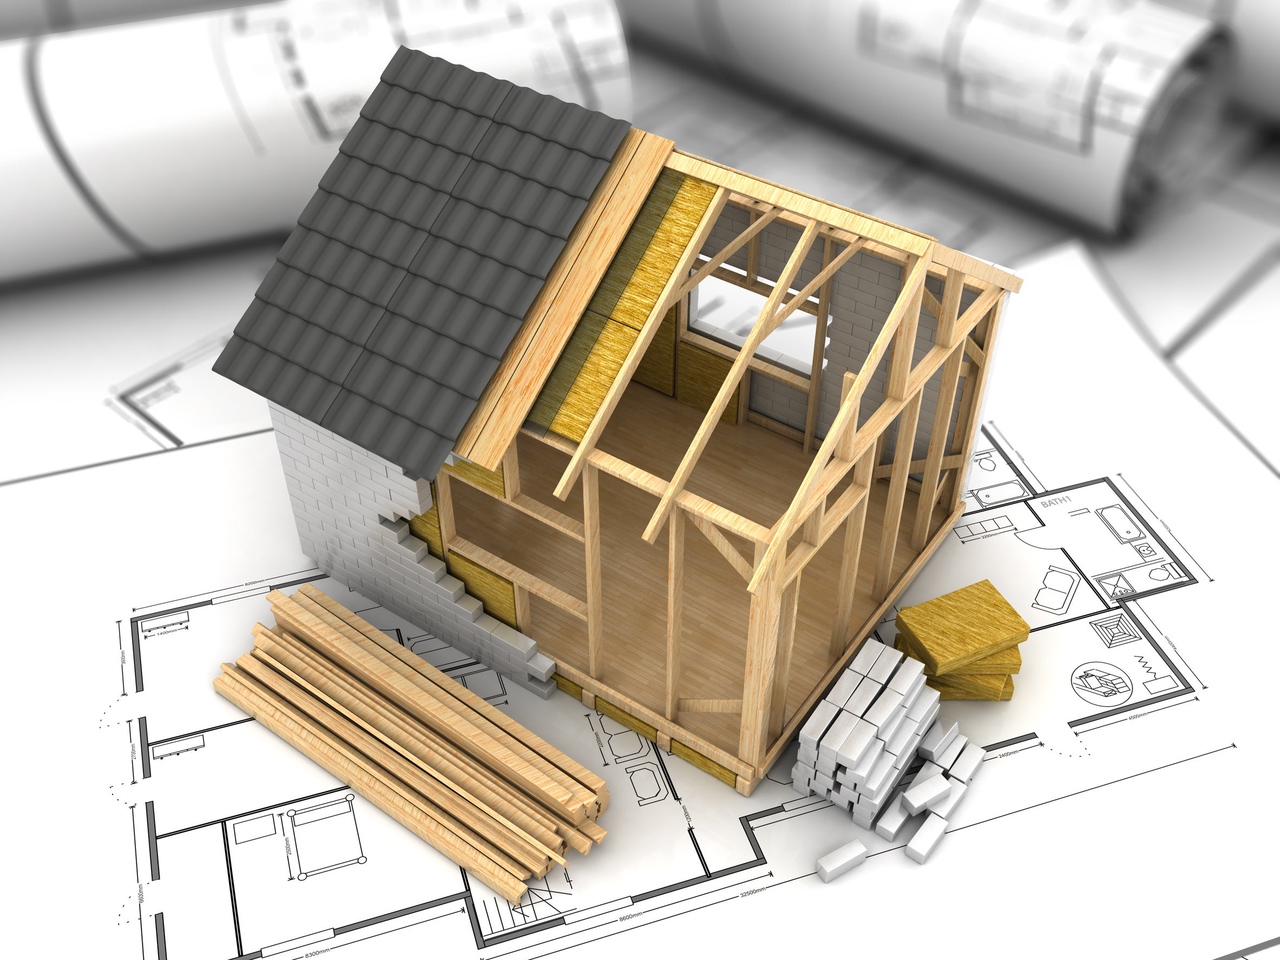 Représentation en 3D d'une maison faisant l'objet d'un permis de construire, conçue dans le cadre du projet architectural.